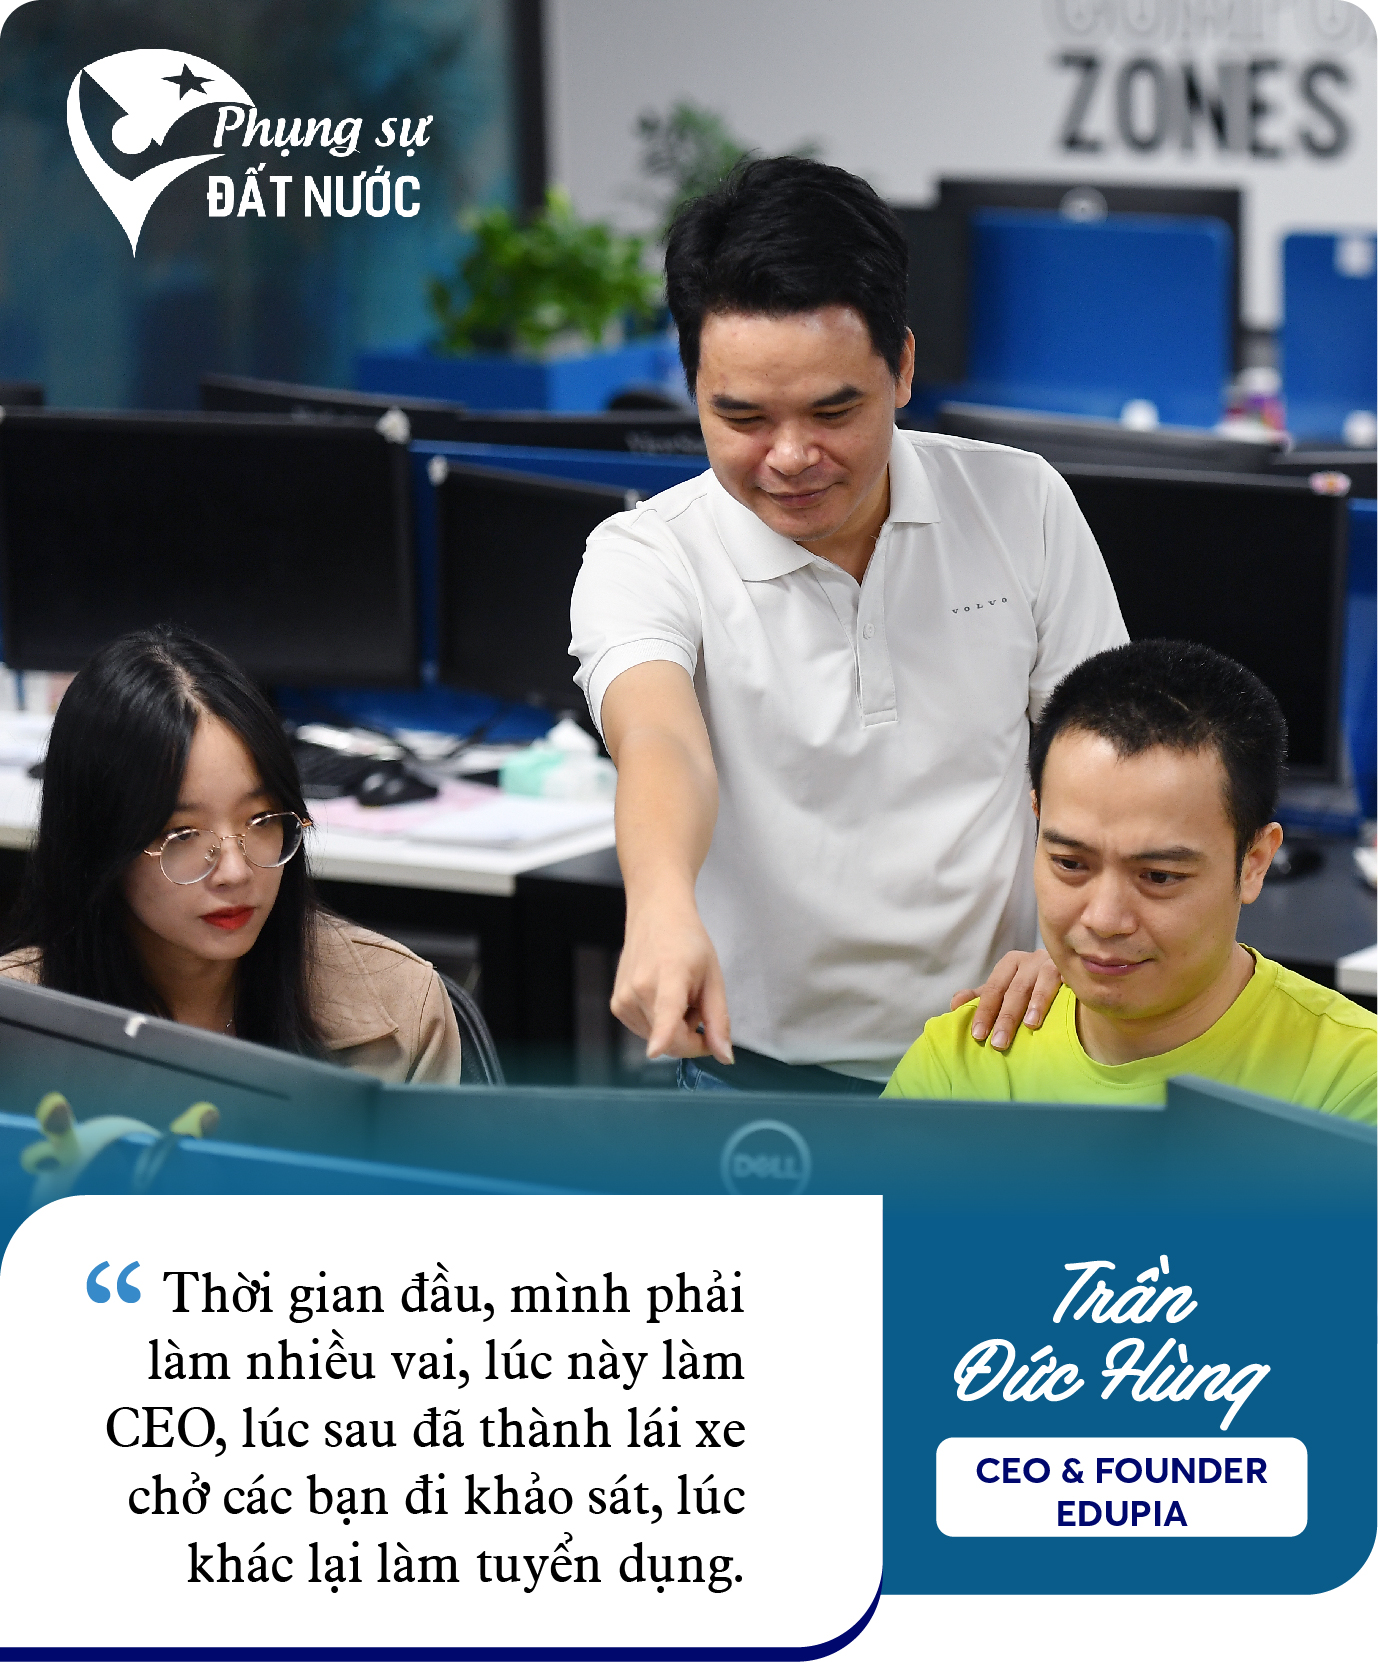 Cựu Giám đốc Digital của Viettel Telecom khởi nghiệp, lập nên Edtech dạy tiếng Anh số 1 Việt Nam: Tìm thấy cơ hội khi về quê, mơ thành ‘cận kỳ lân’ năm 2025 - Ảnh 6.